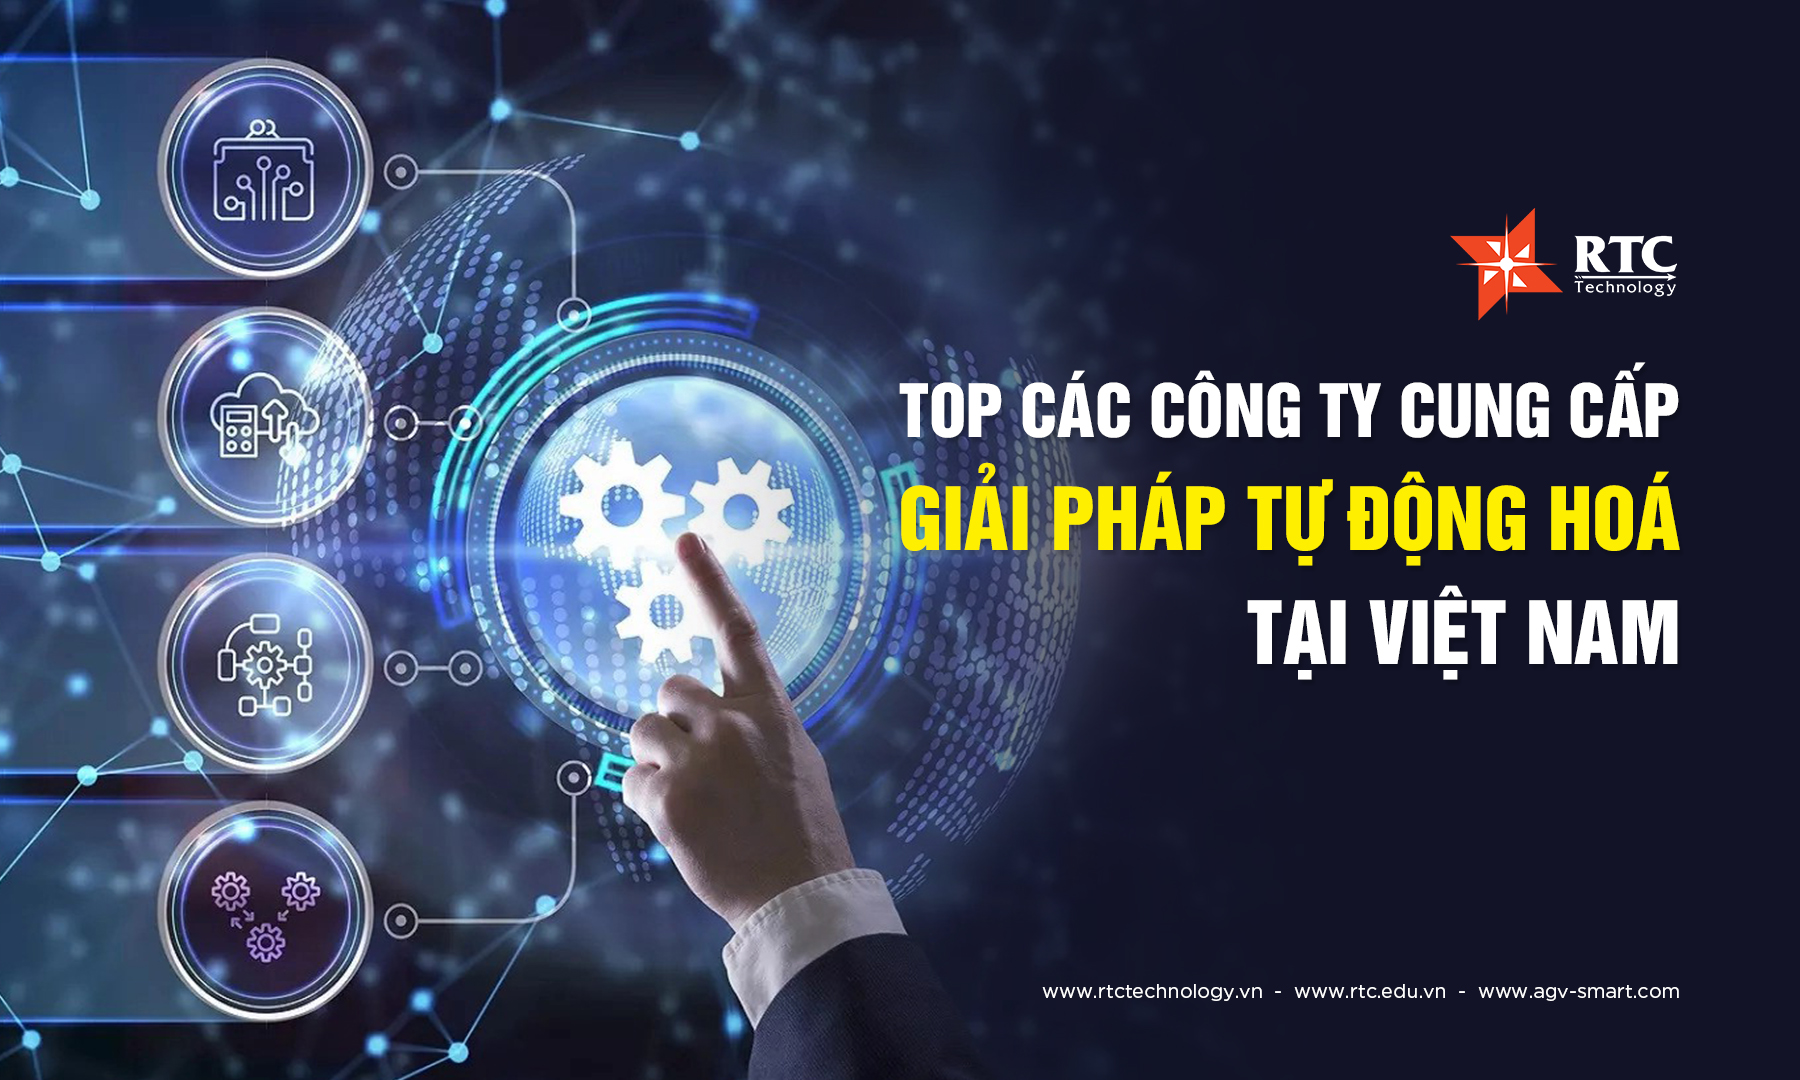 Top các công ty cung cấp giải pháp tự động hoá tại Việt Nam